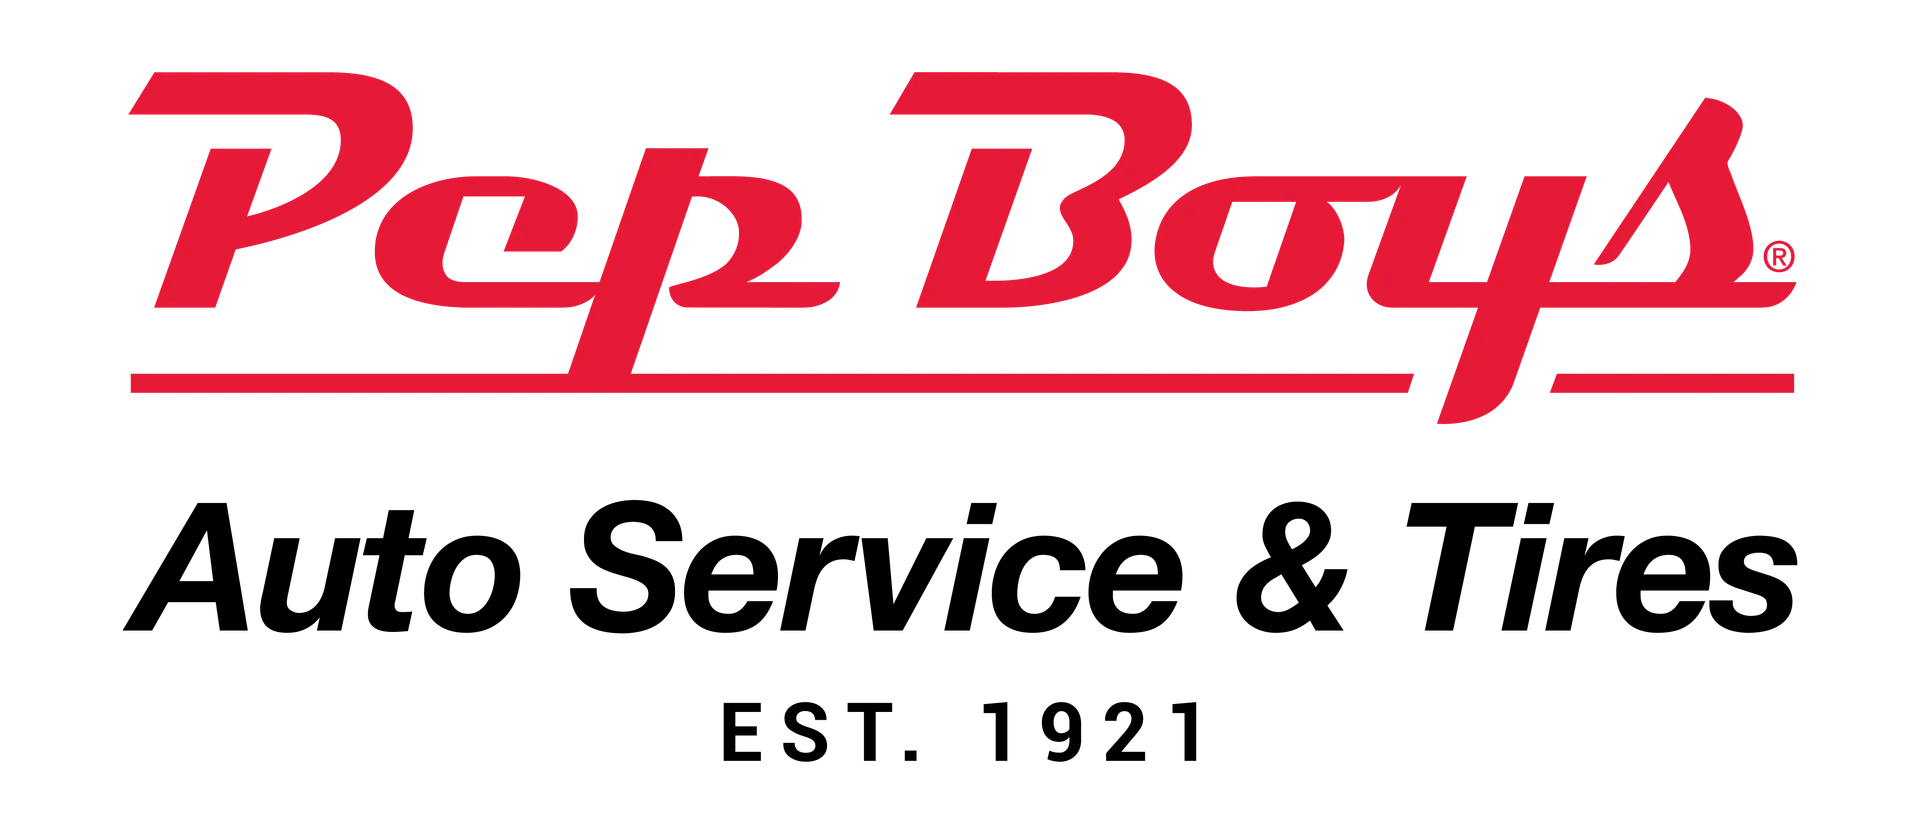 PEP BOYS logo de catálogo